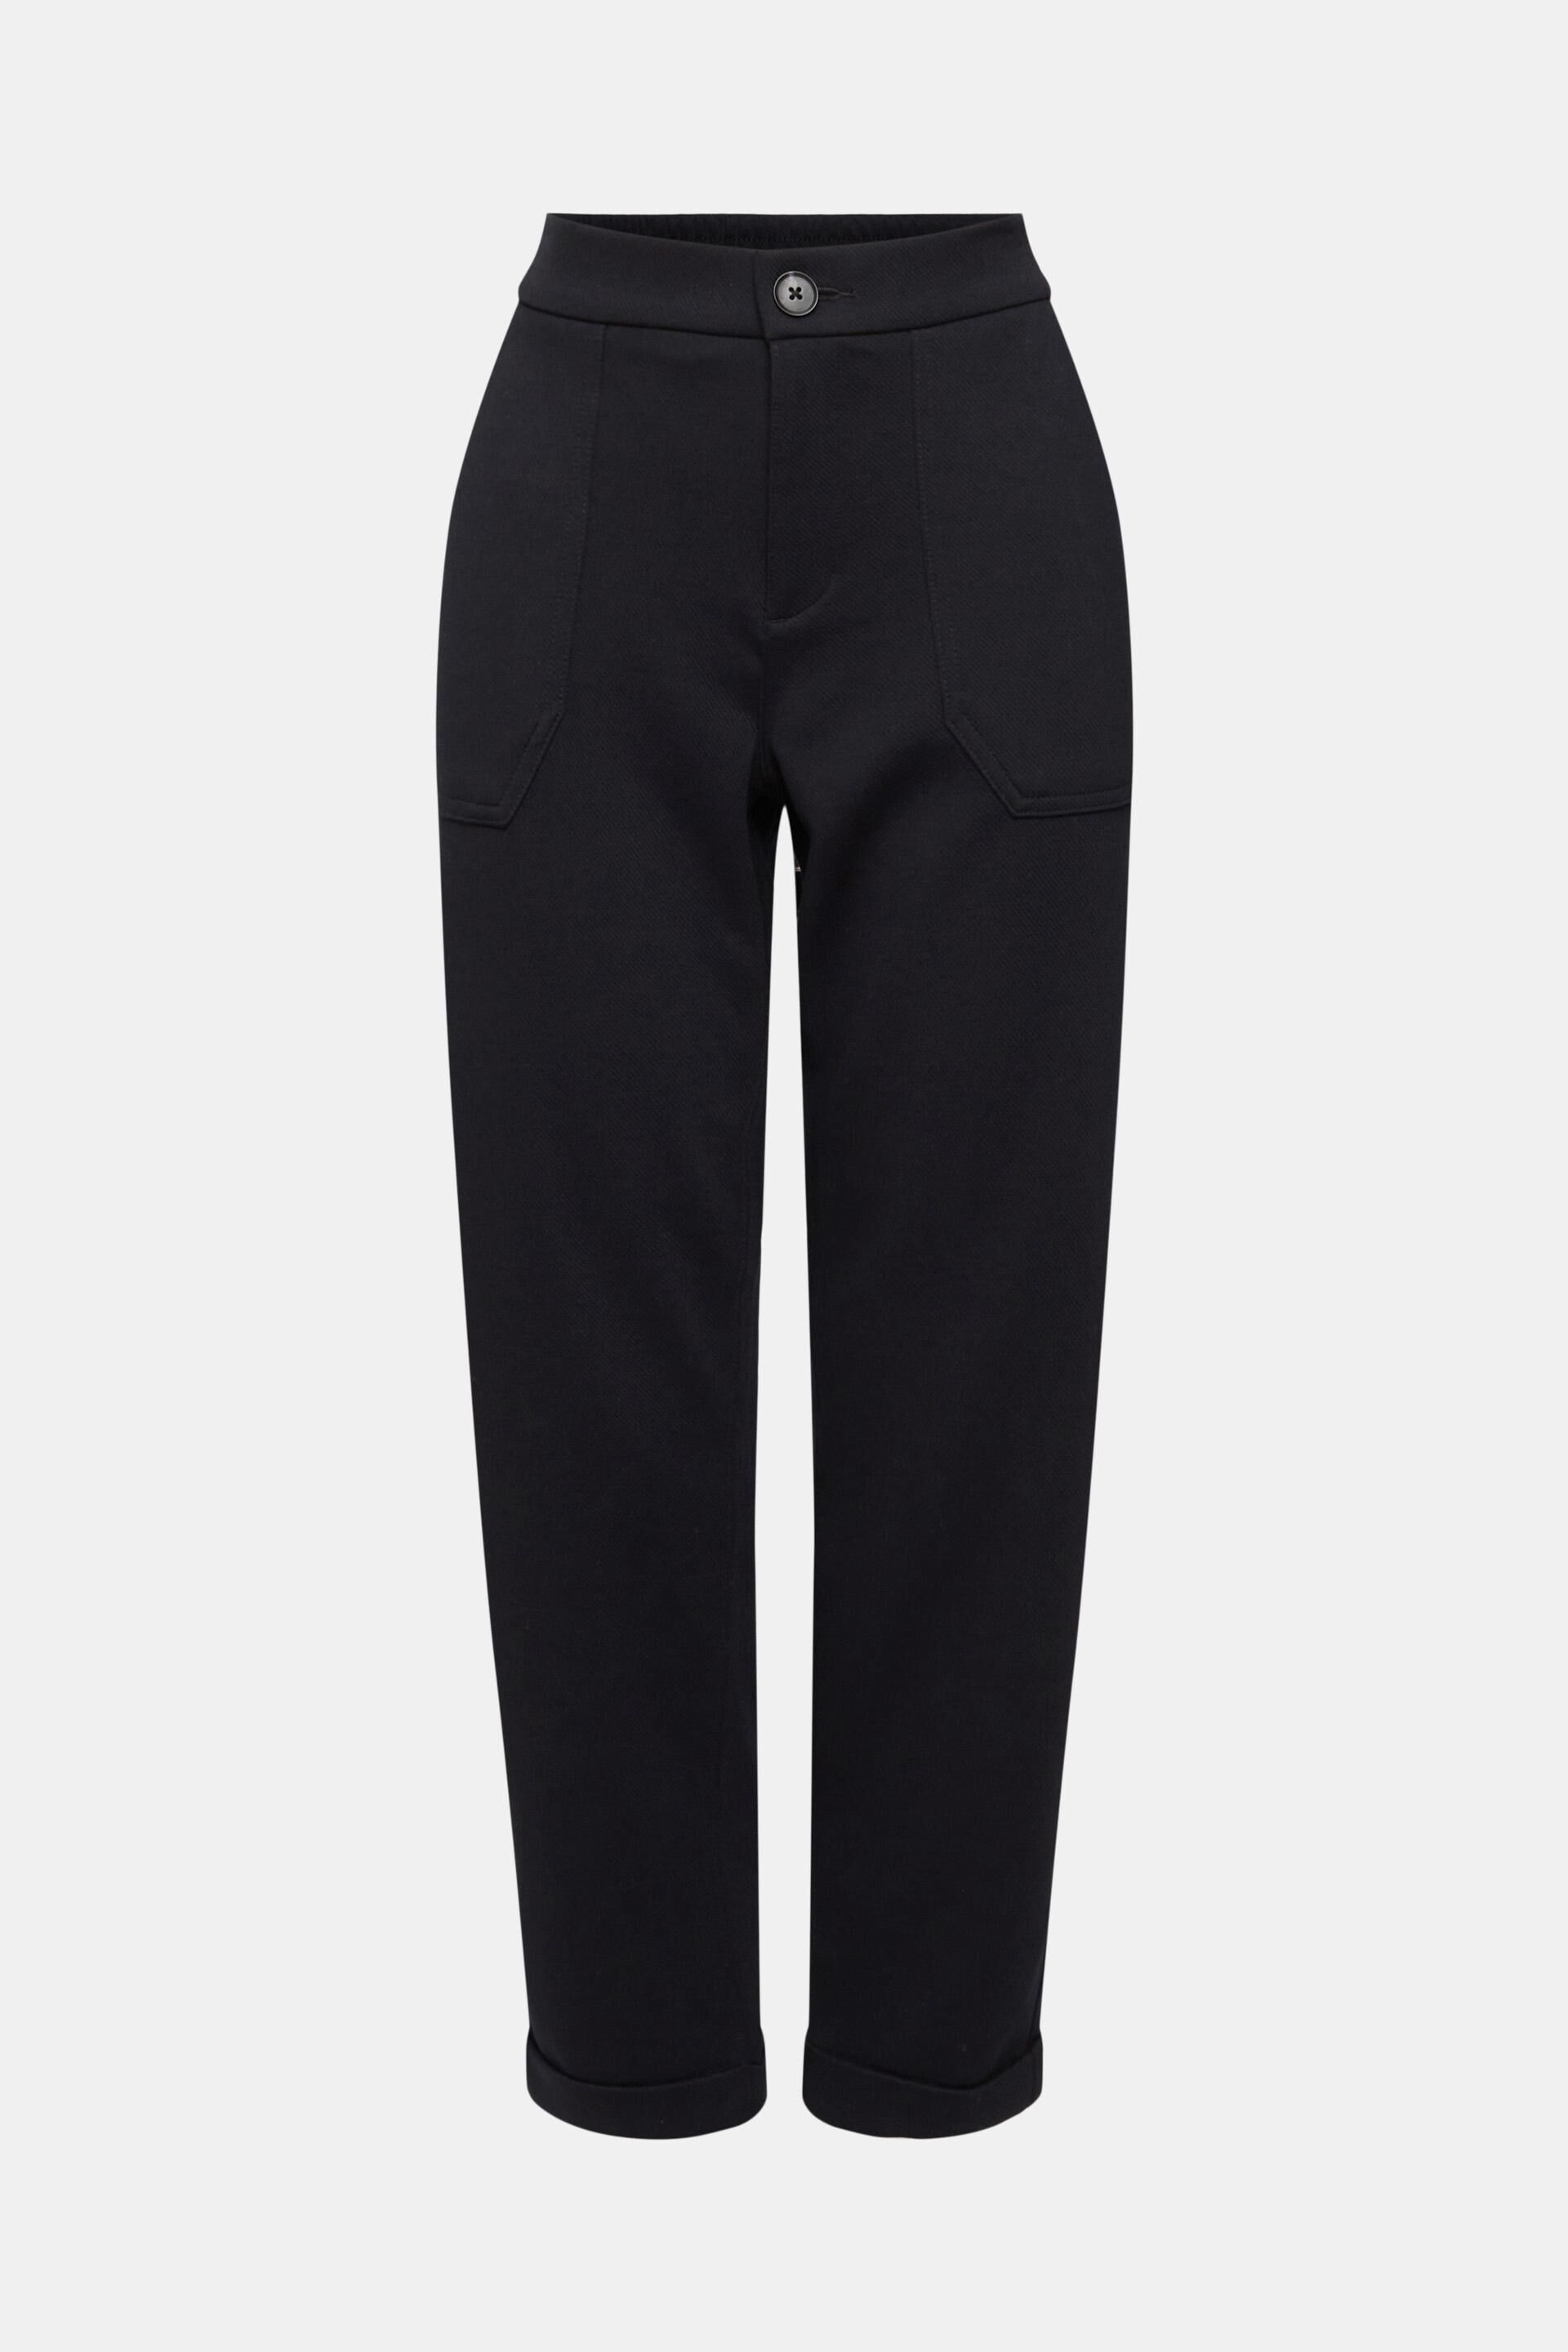 Esprit Stoffen broek zwart-lichtgrijs gestreept patroon casual uitstraling Mode Broeken Stoffen broeken 